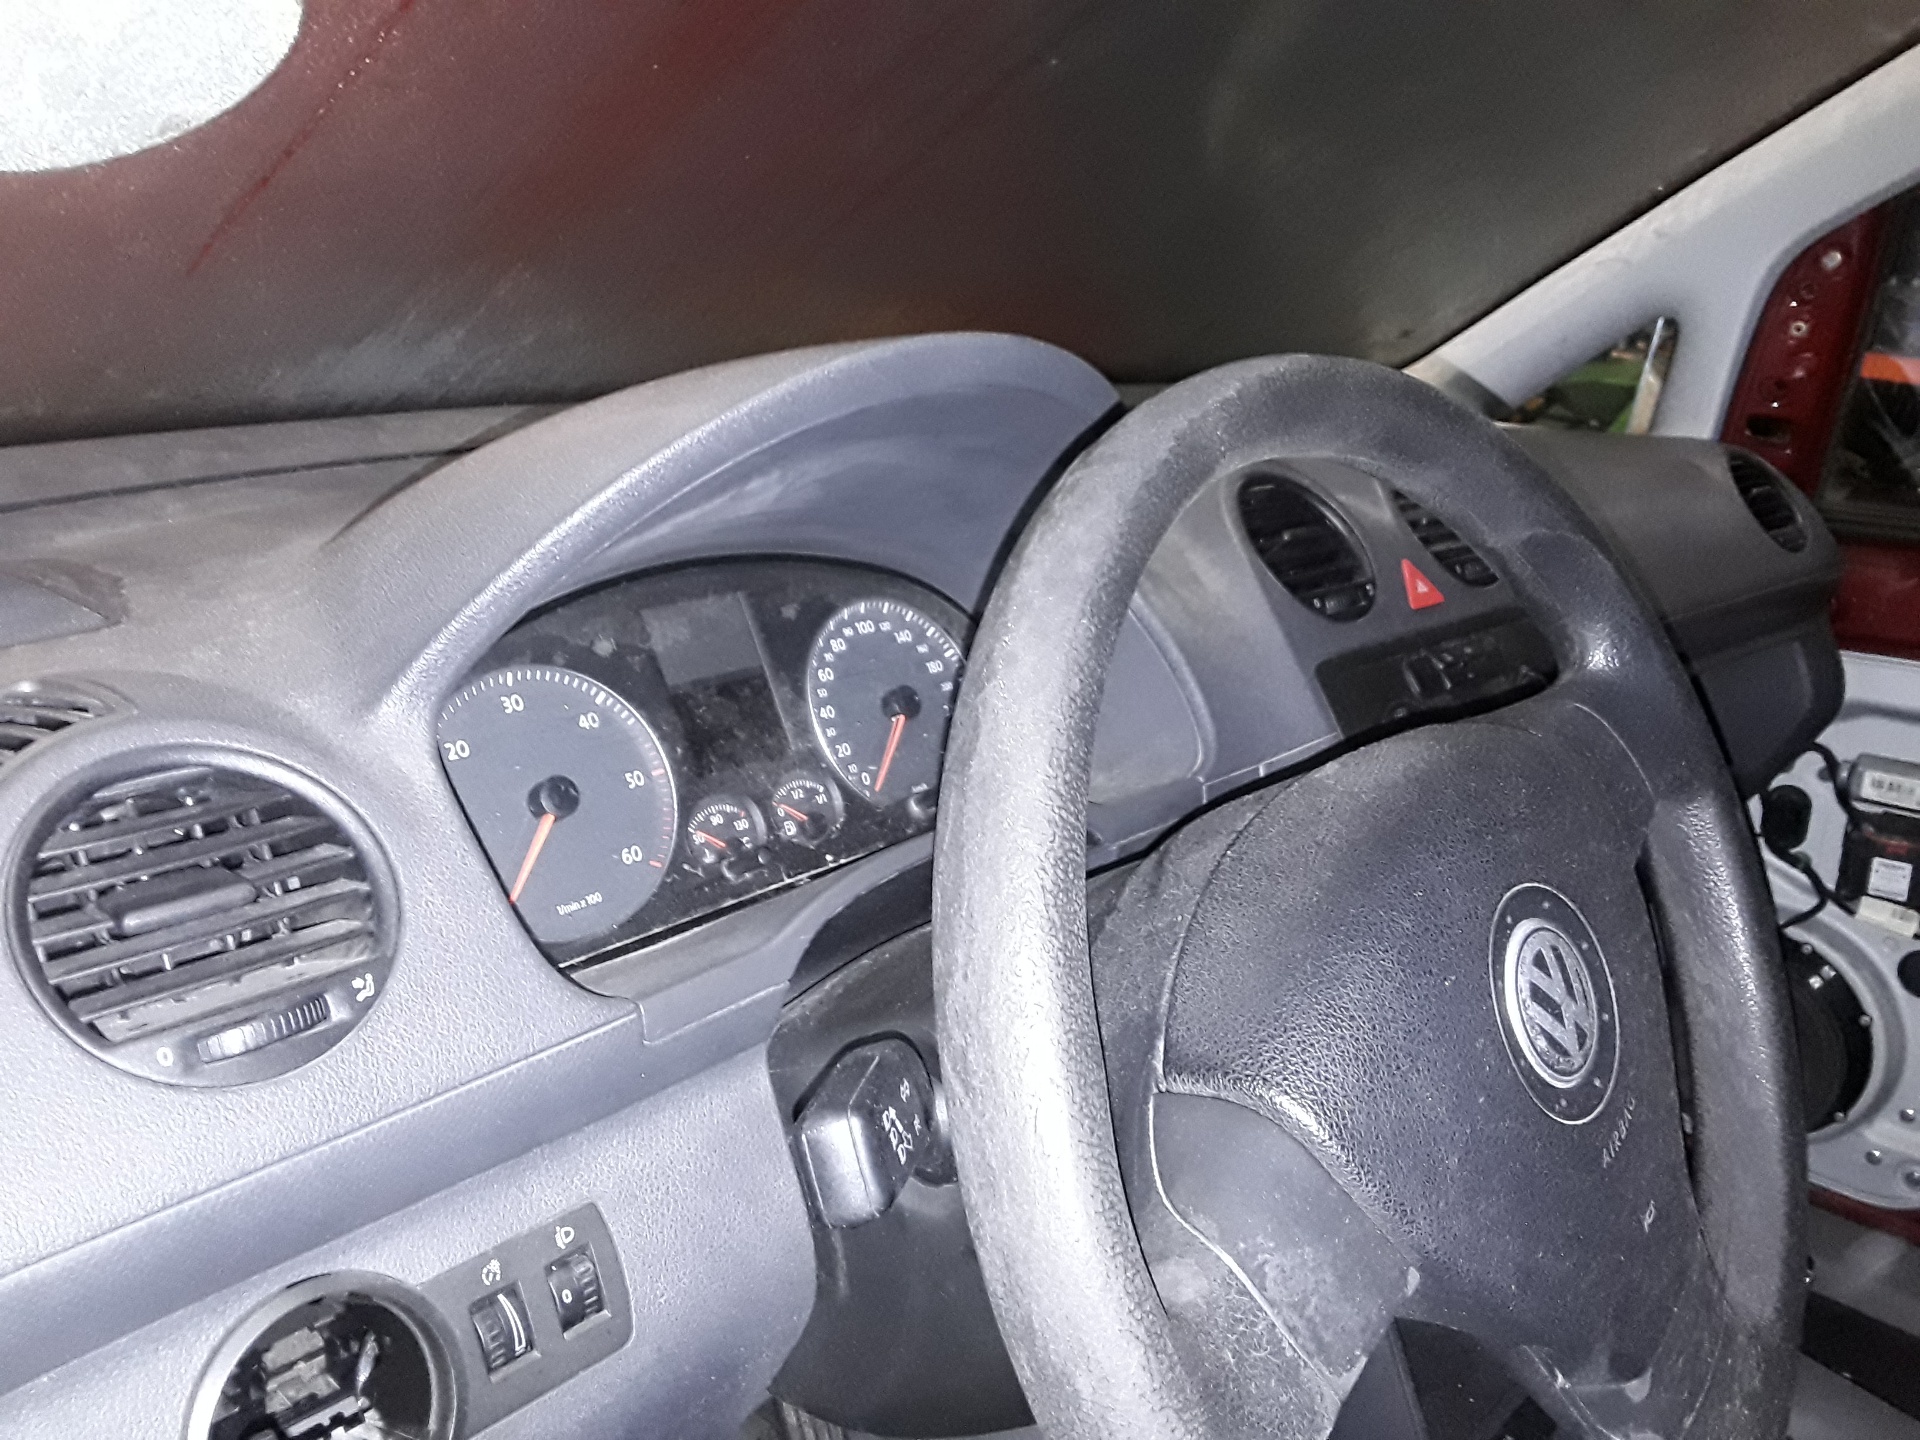 VOLKSWAGEN Caddy 3 generation (2004-2015) Priekinių dešinių durų spyna 3D1837016AC 24065797